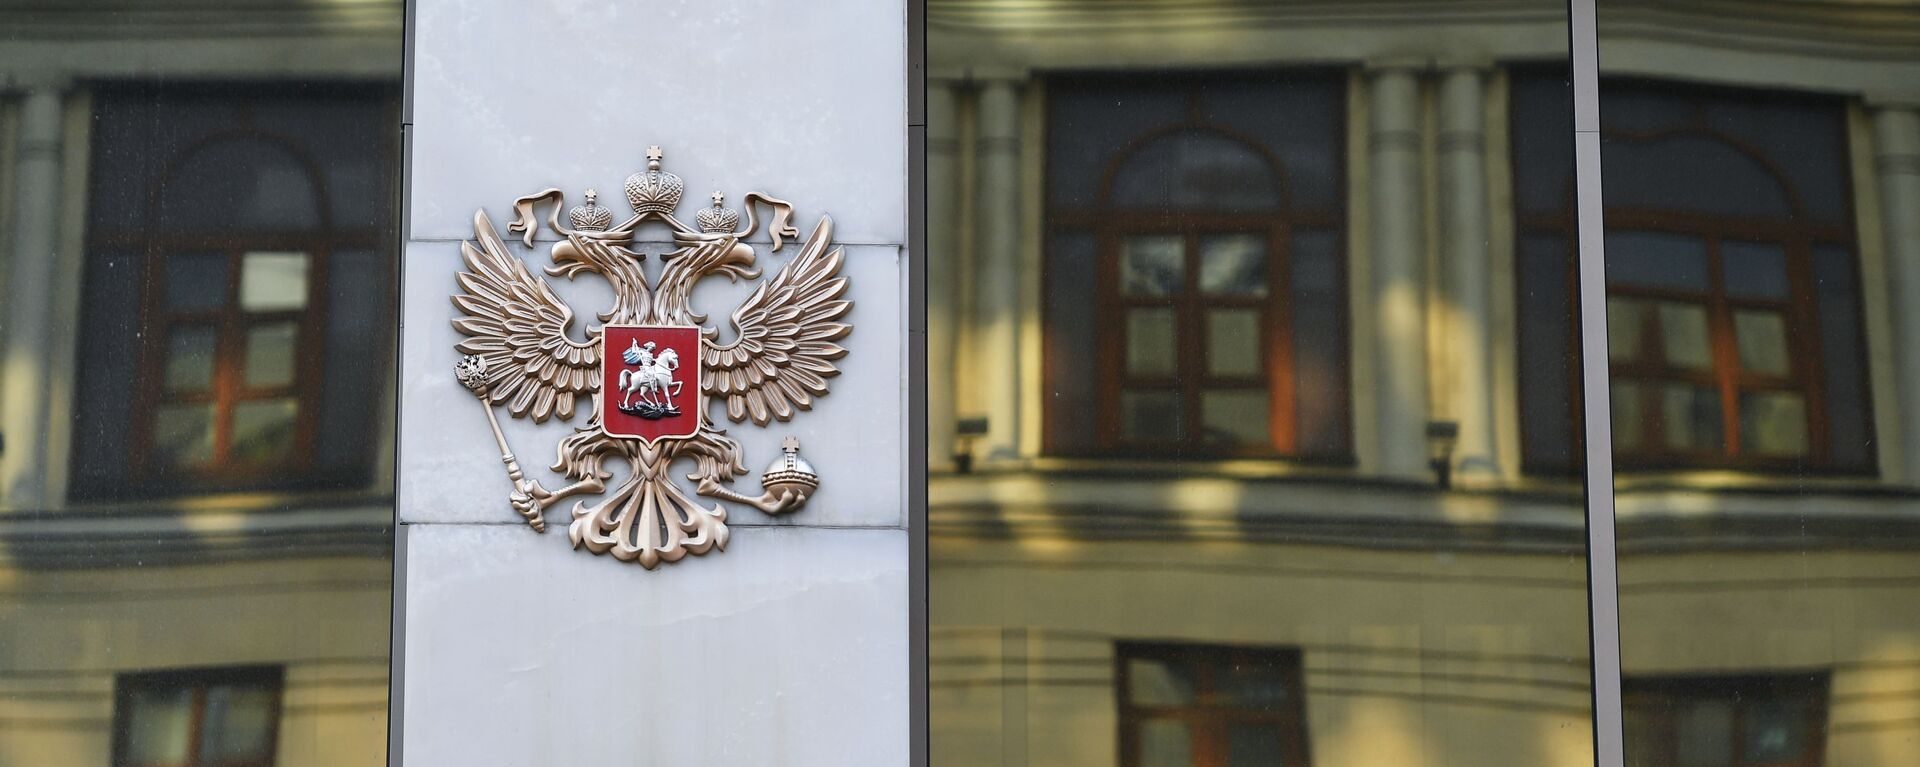 El escudo de Rusia en el edificio del Consejo de Federación ruso - Sputnik Mundo, 1920, 24.05.2021